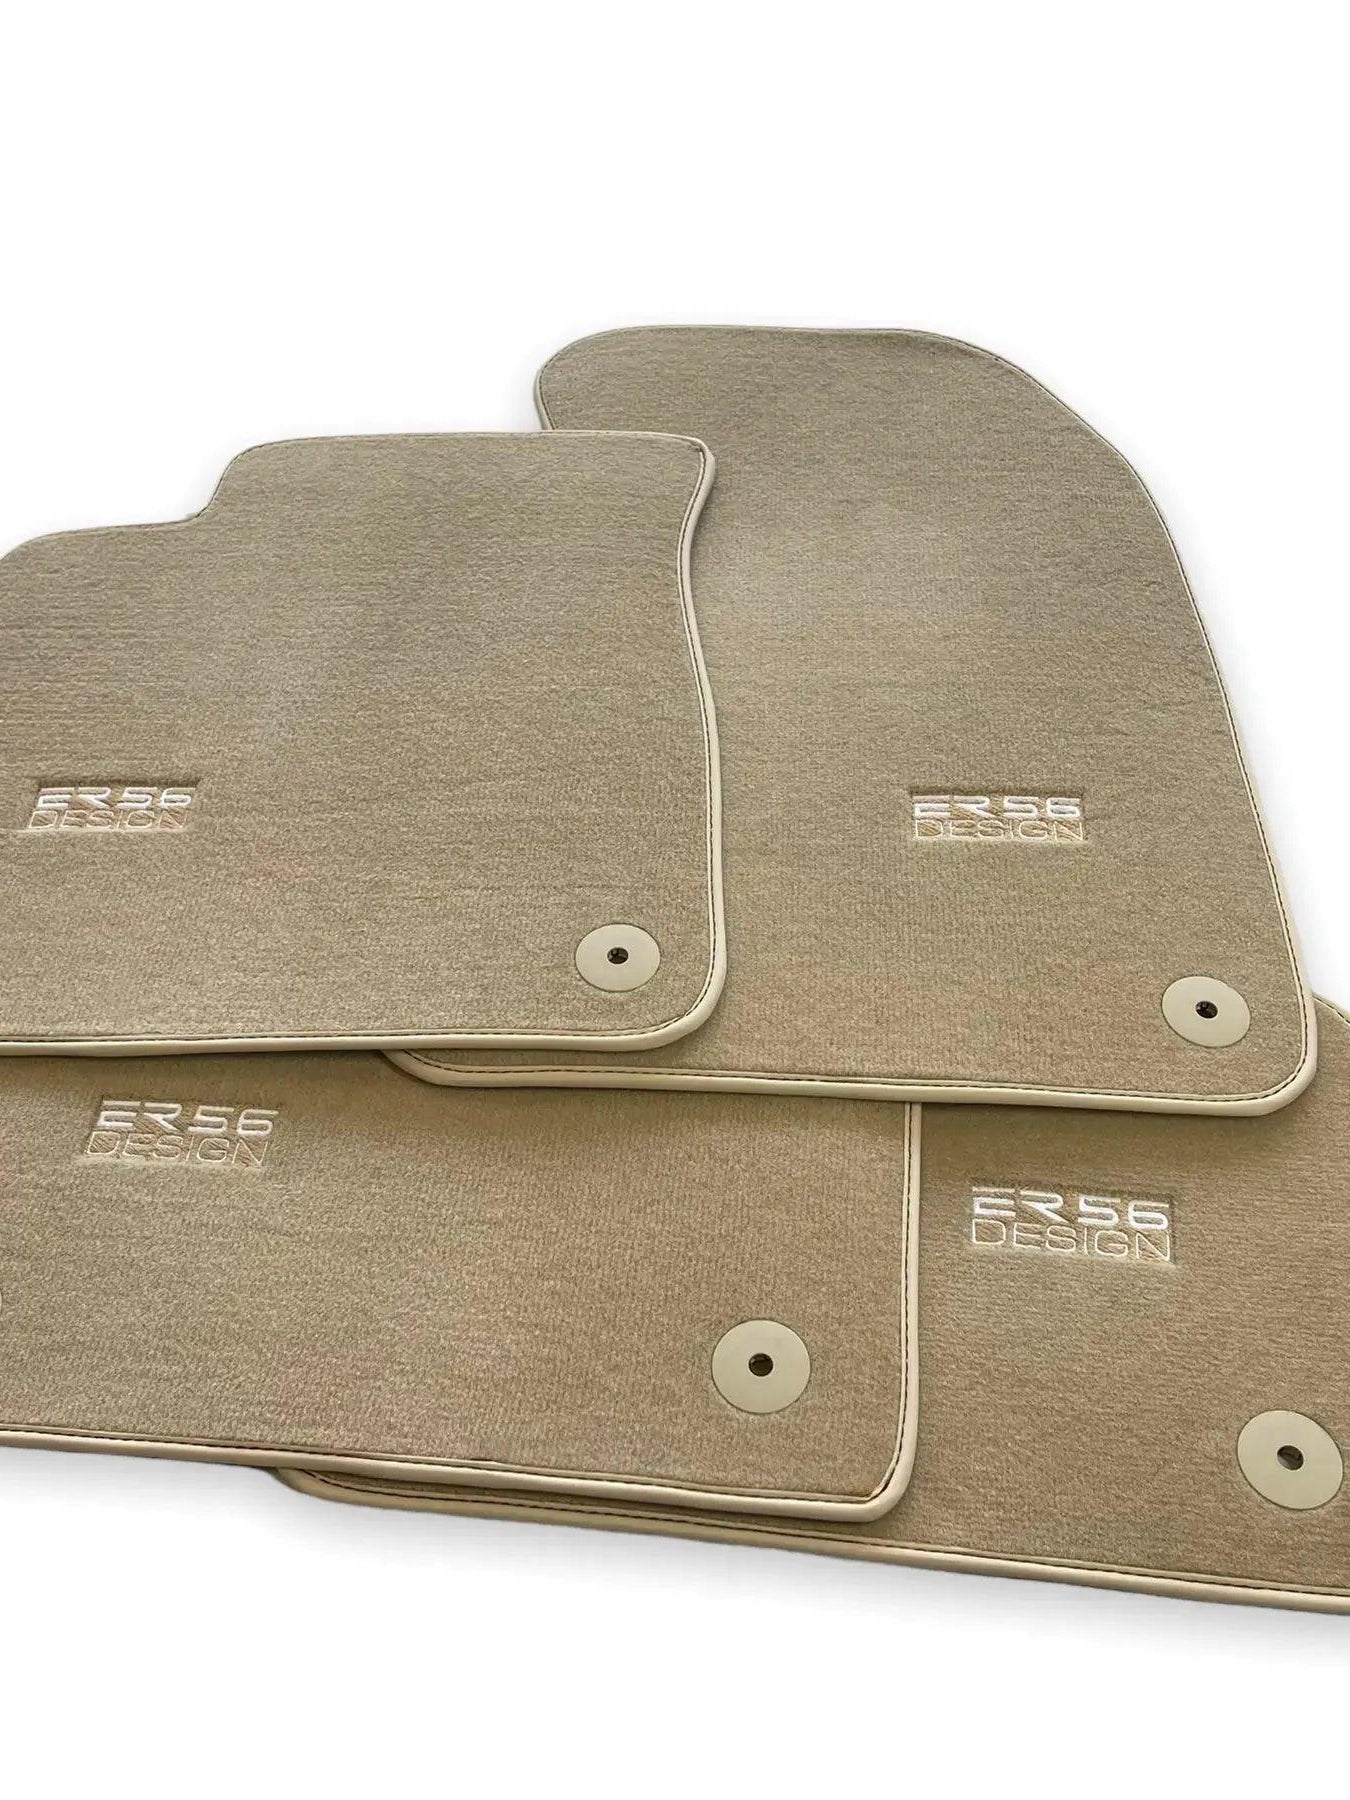 Beige Floor Mats for Audi A5 - F53 Coupe (2020-2023) | ER56 Design - AutoWin